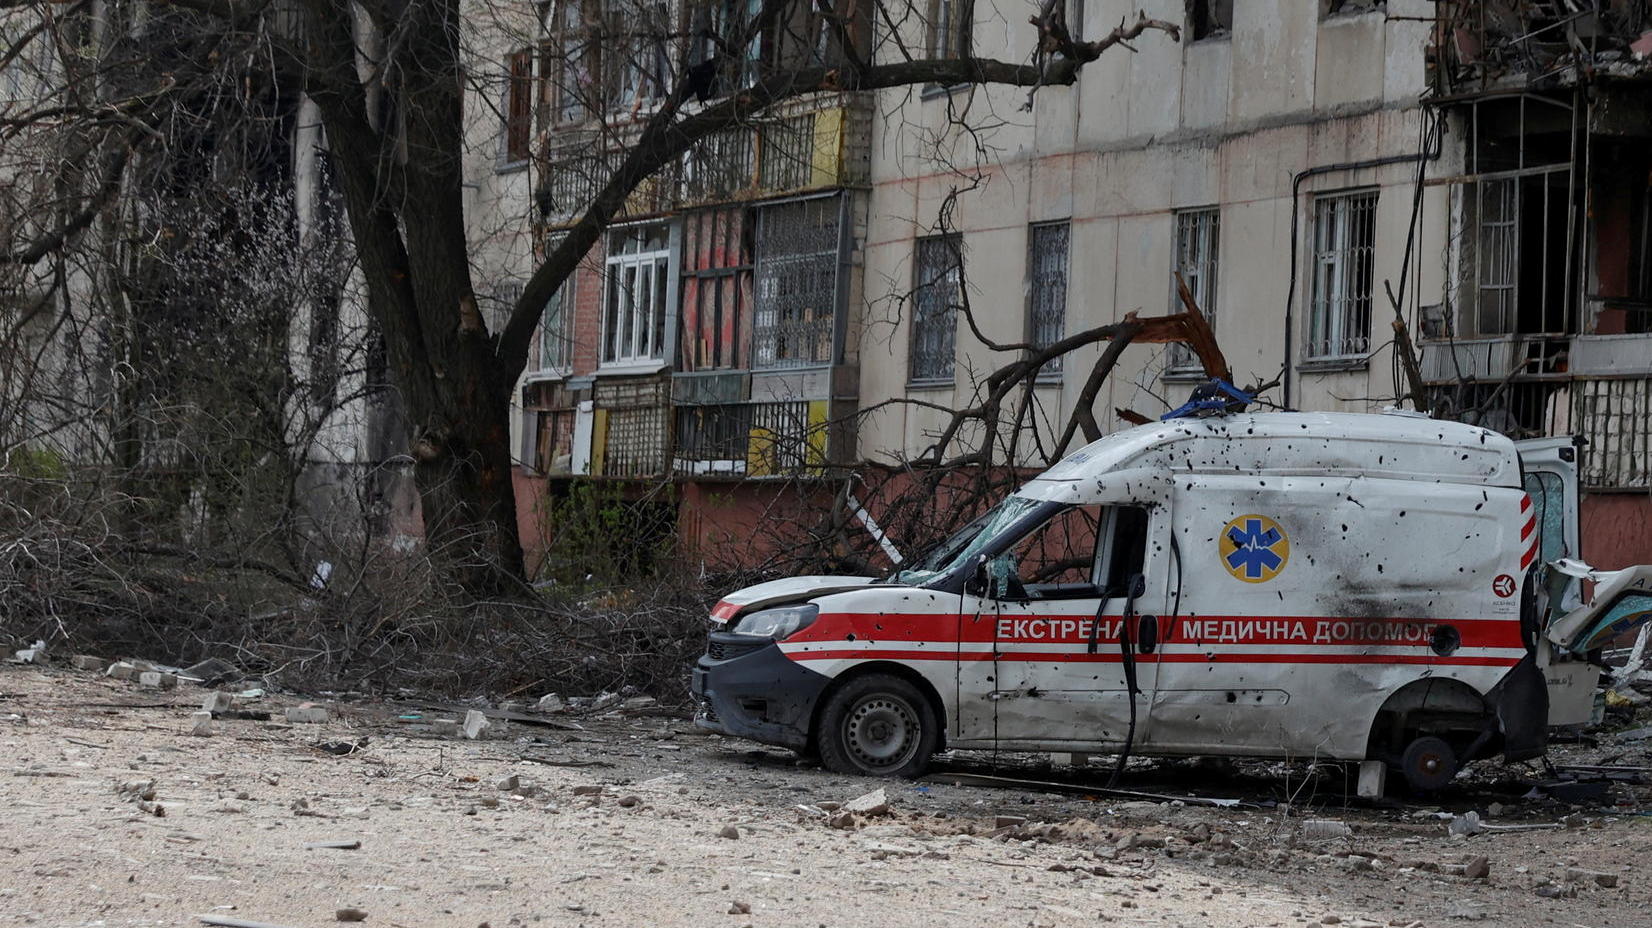 ++ News zum Ukraine-Krieg ++ Putin ehrt Brigade nach Butscha-Massaker